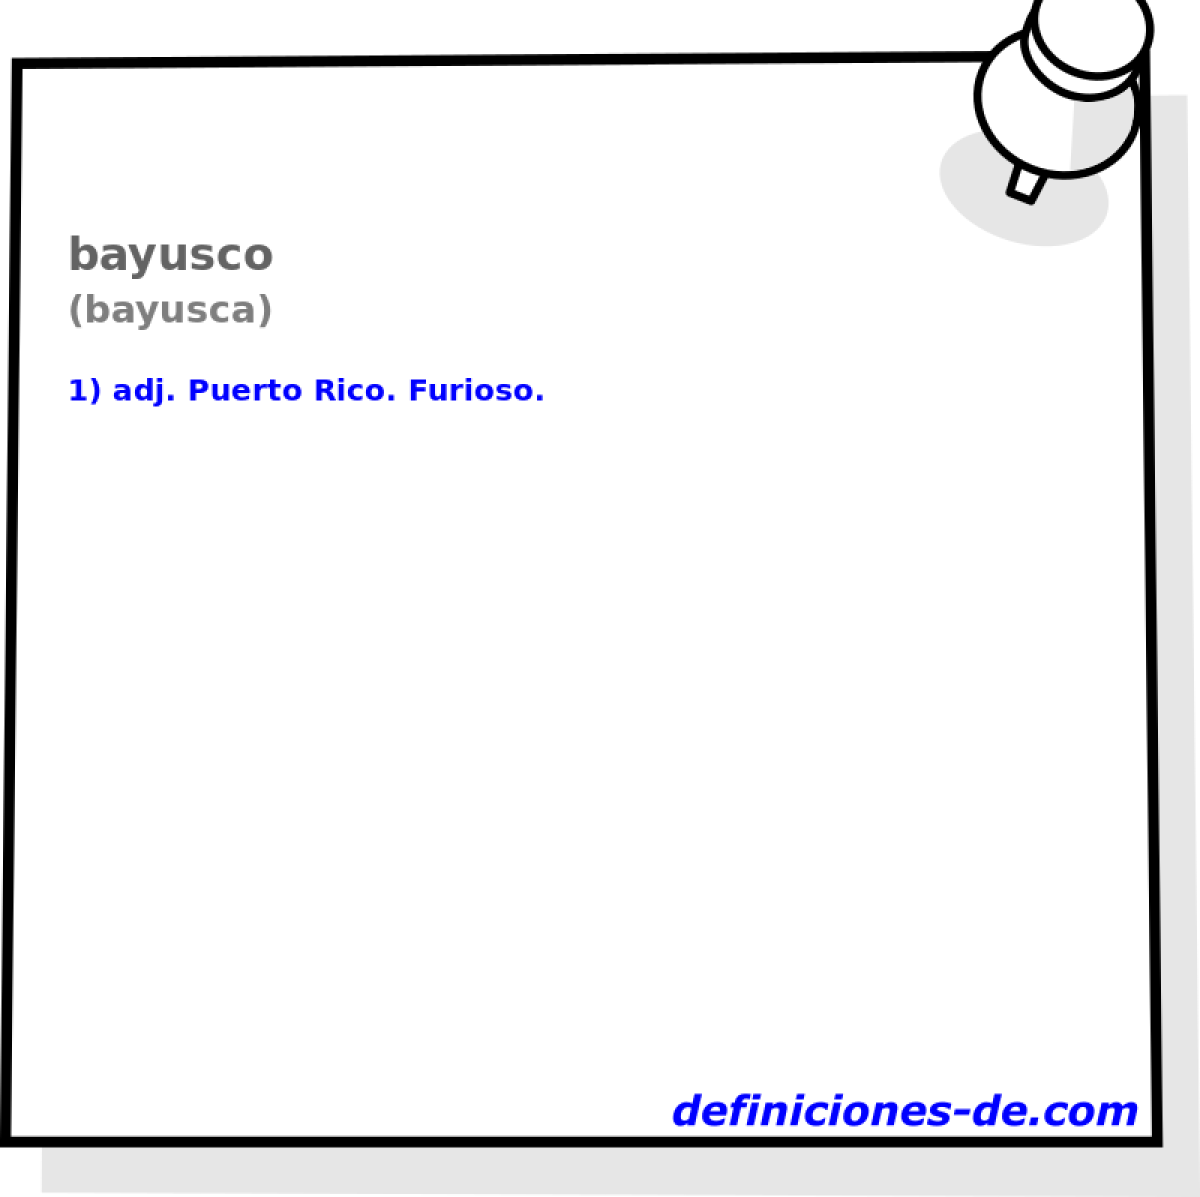 bayusco (bayusca)